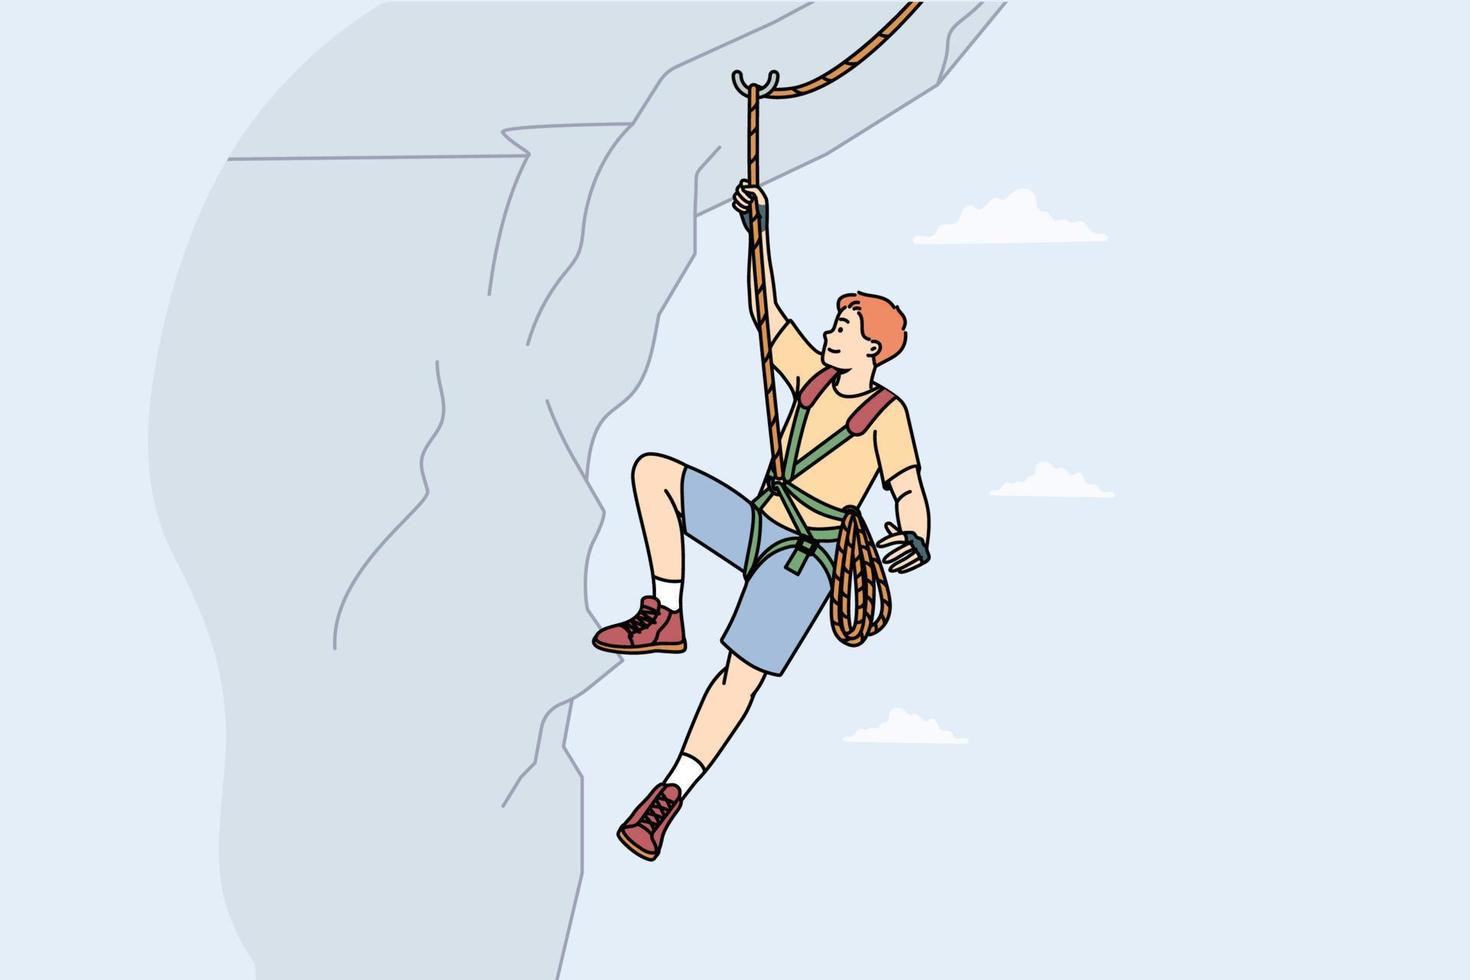 homme escalade montagne avec équipement spécial. grimpeur mâle suspendu à la falaise. concept d'alpiniste et de sport extrême. illustration vectorielle. vecteur